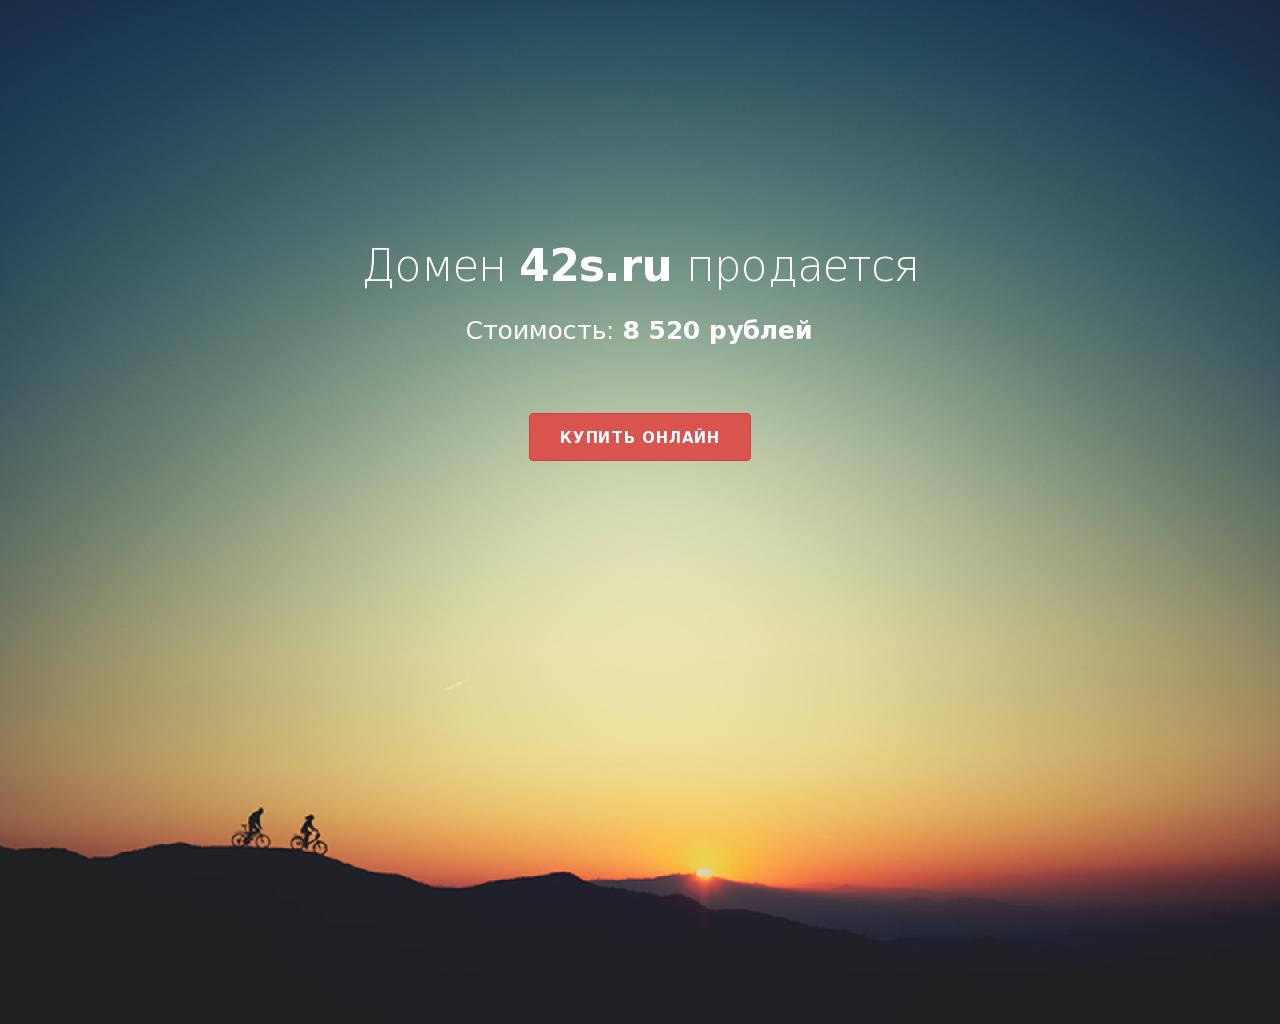 Изображение сайта 42s.ru в разрешении 1280x1024